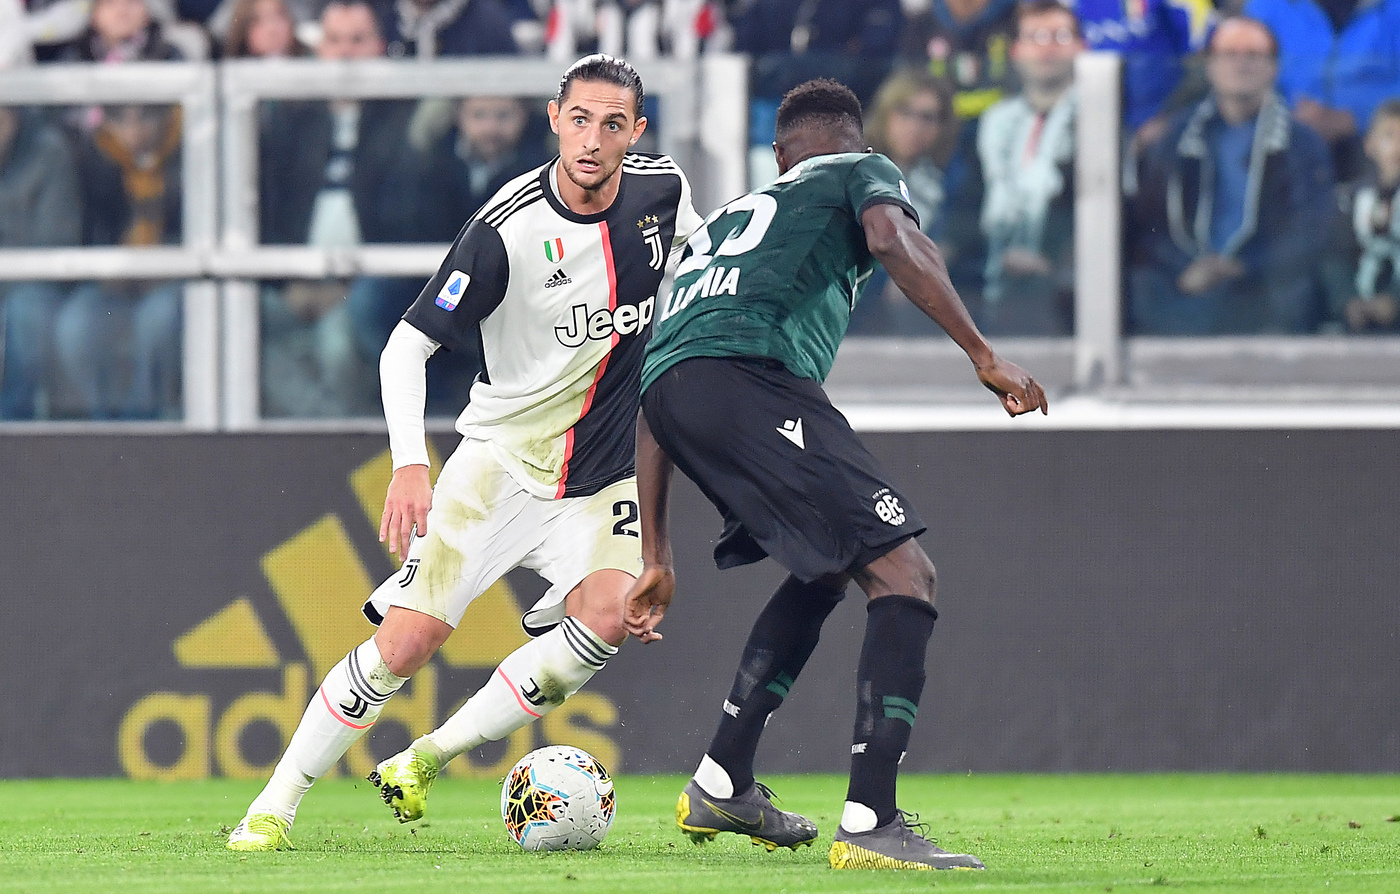 Afbeeldingsresultaat voor Juventus Bologna 19 ottobre 2019